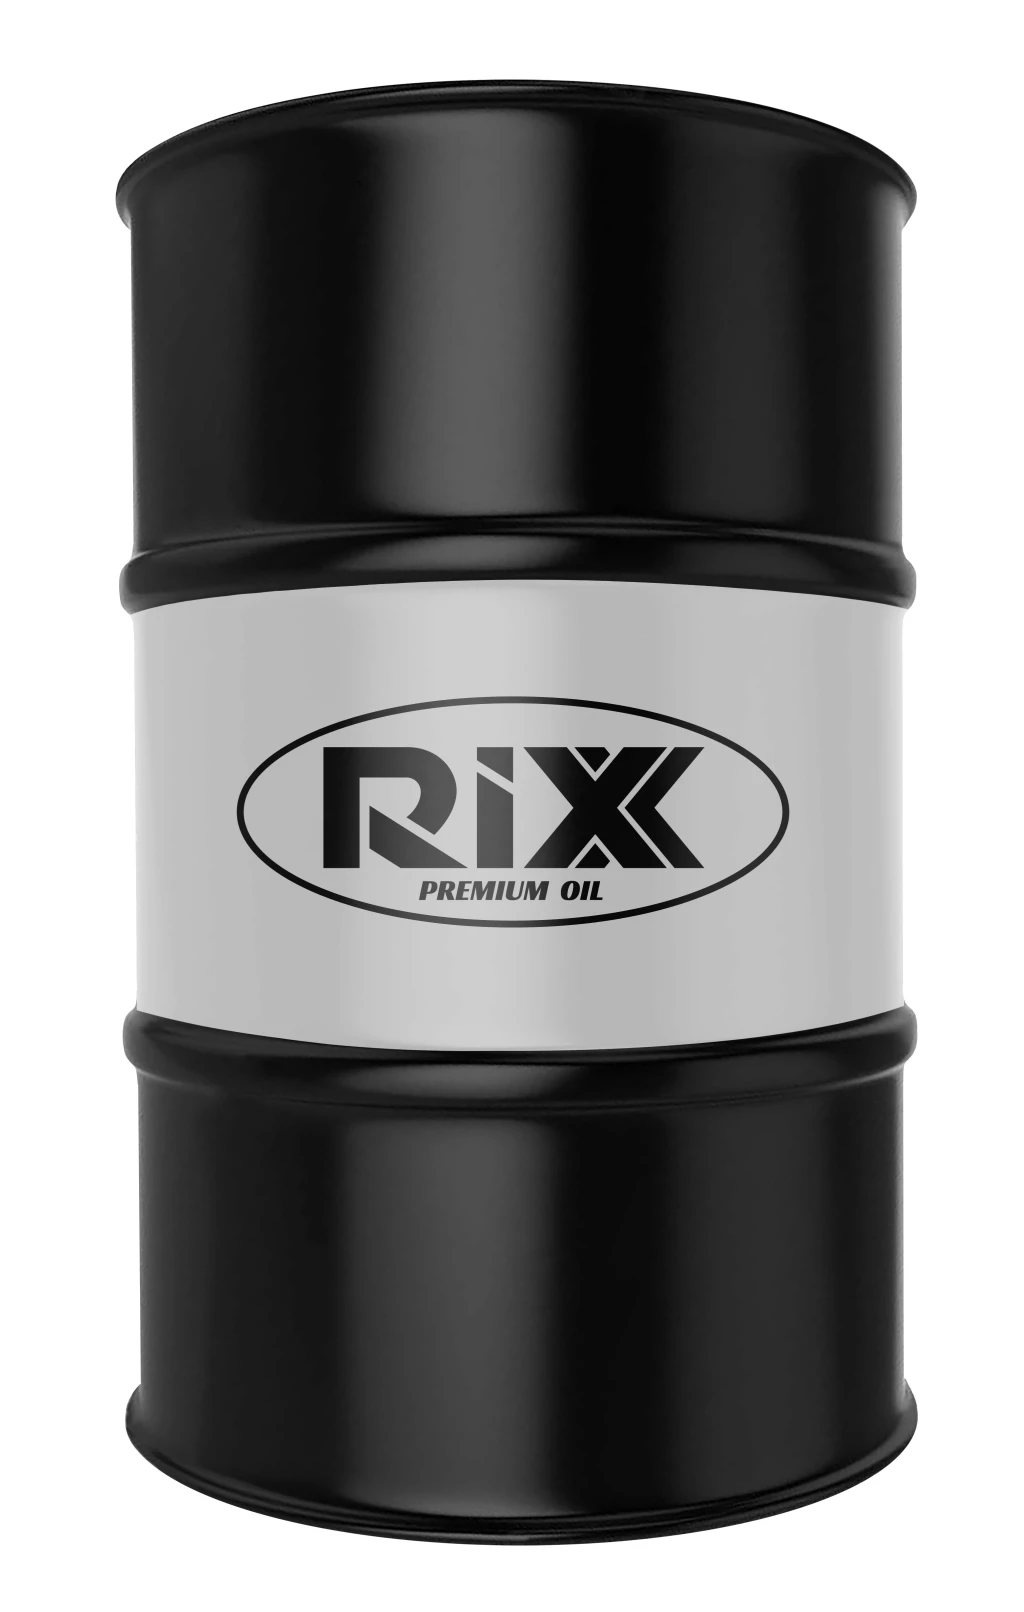 Моторное масло RIXX TP N 5W-30 синтетическое 208 л